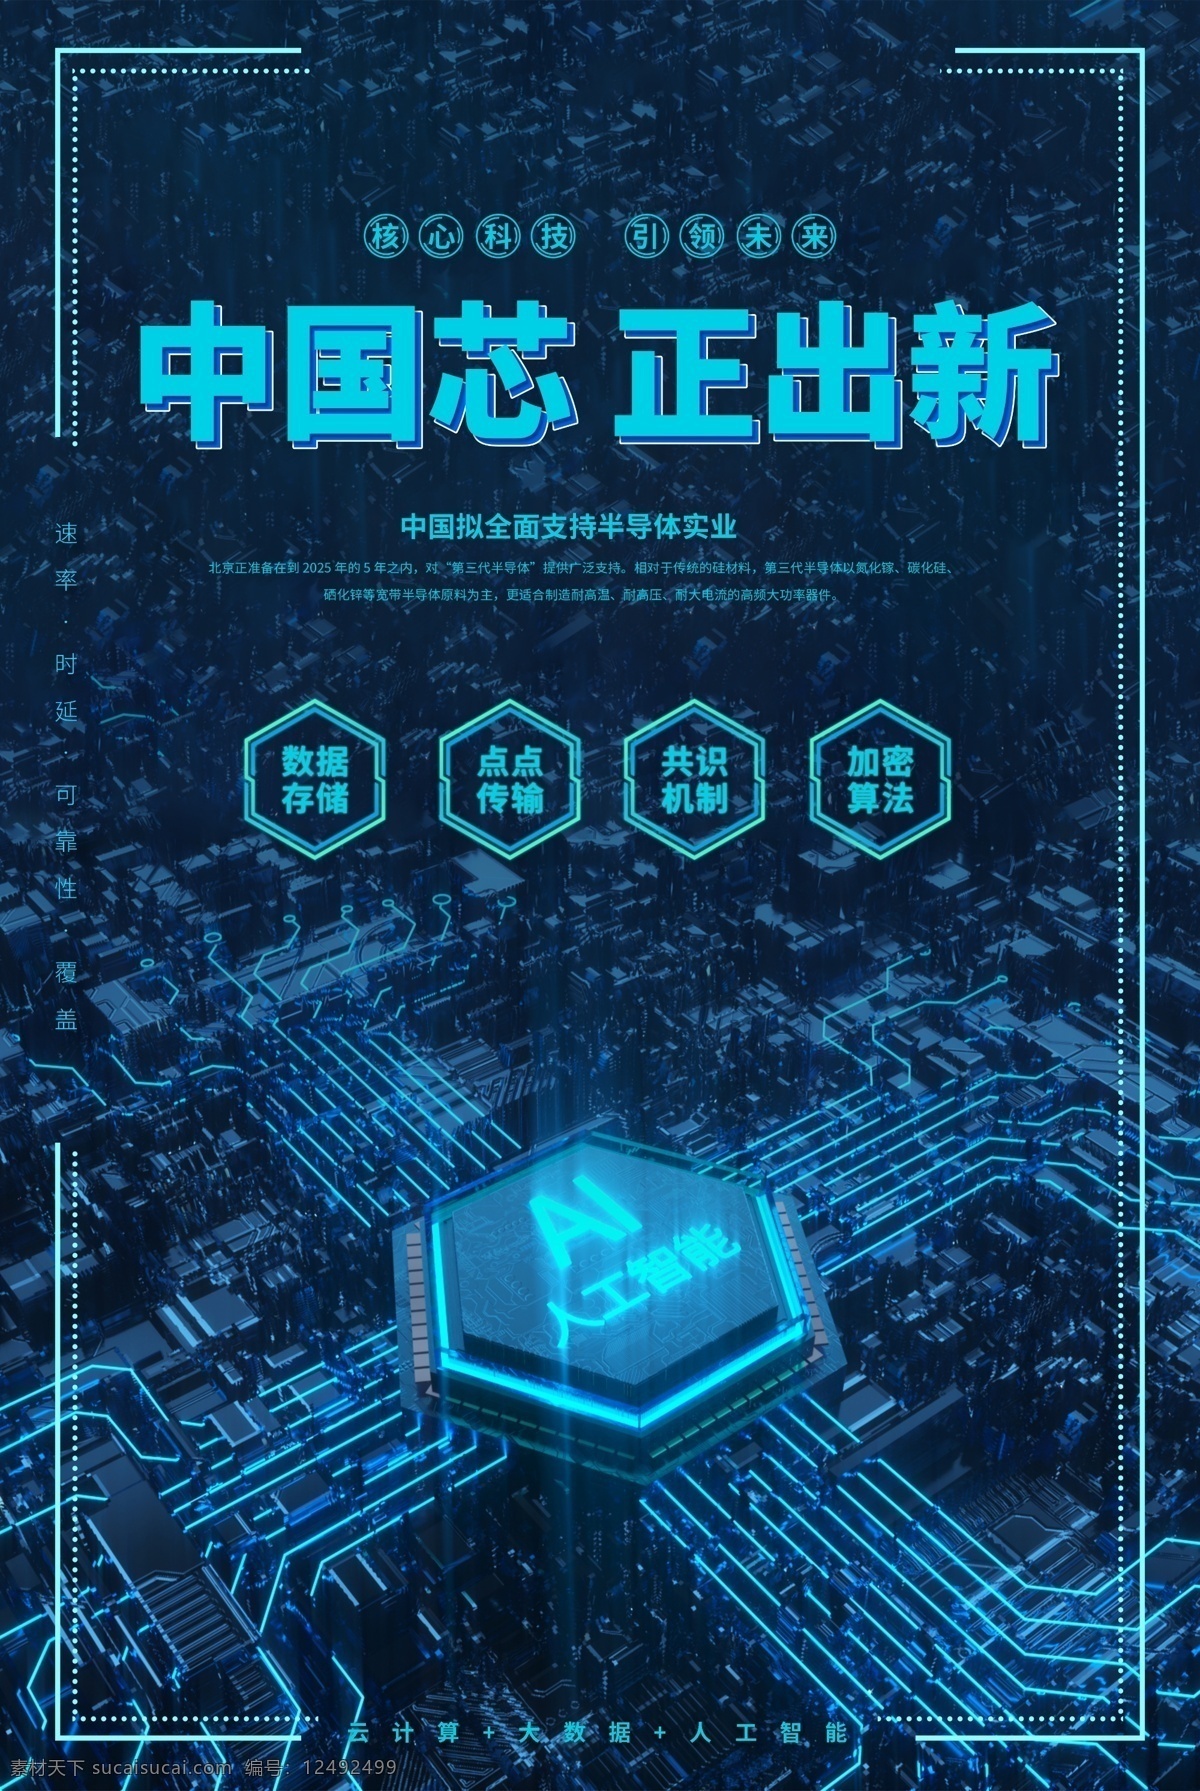 中国芯图片 芯片 打造中国芯 中国梦 实现中国梦 芯片制造 电子产品 核心技术 芯片科技 cpu